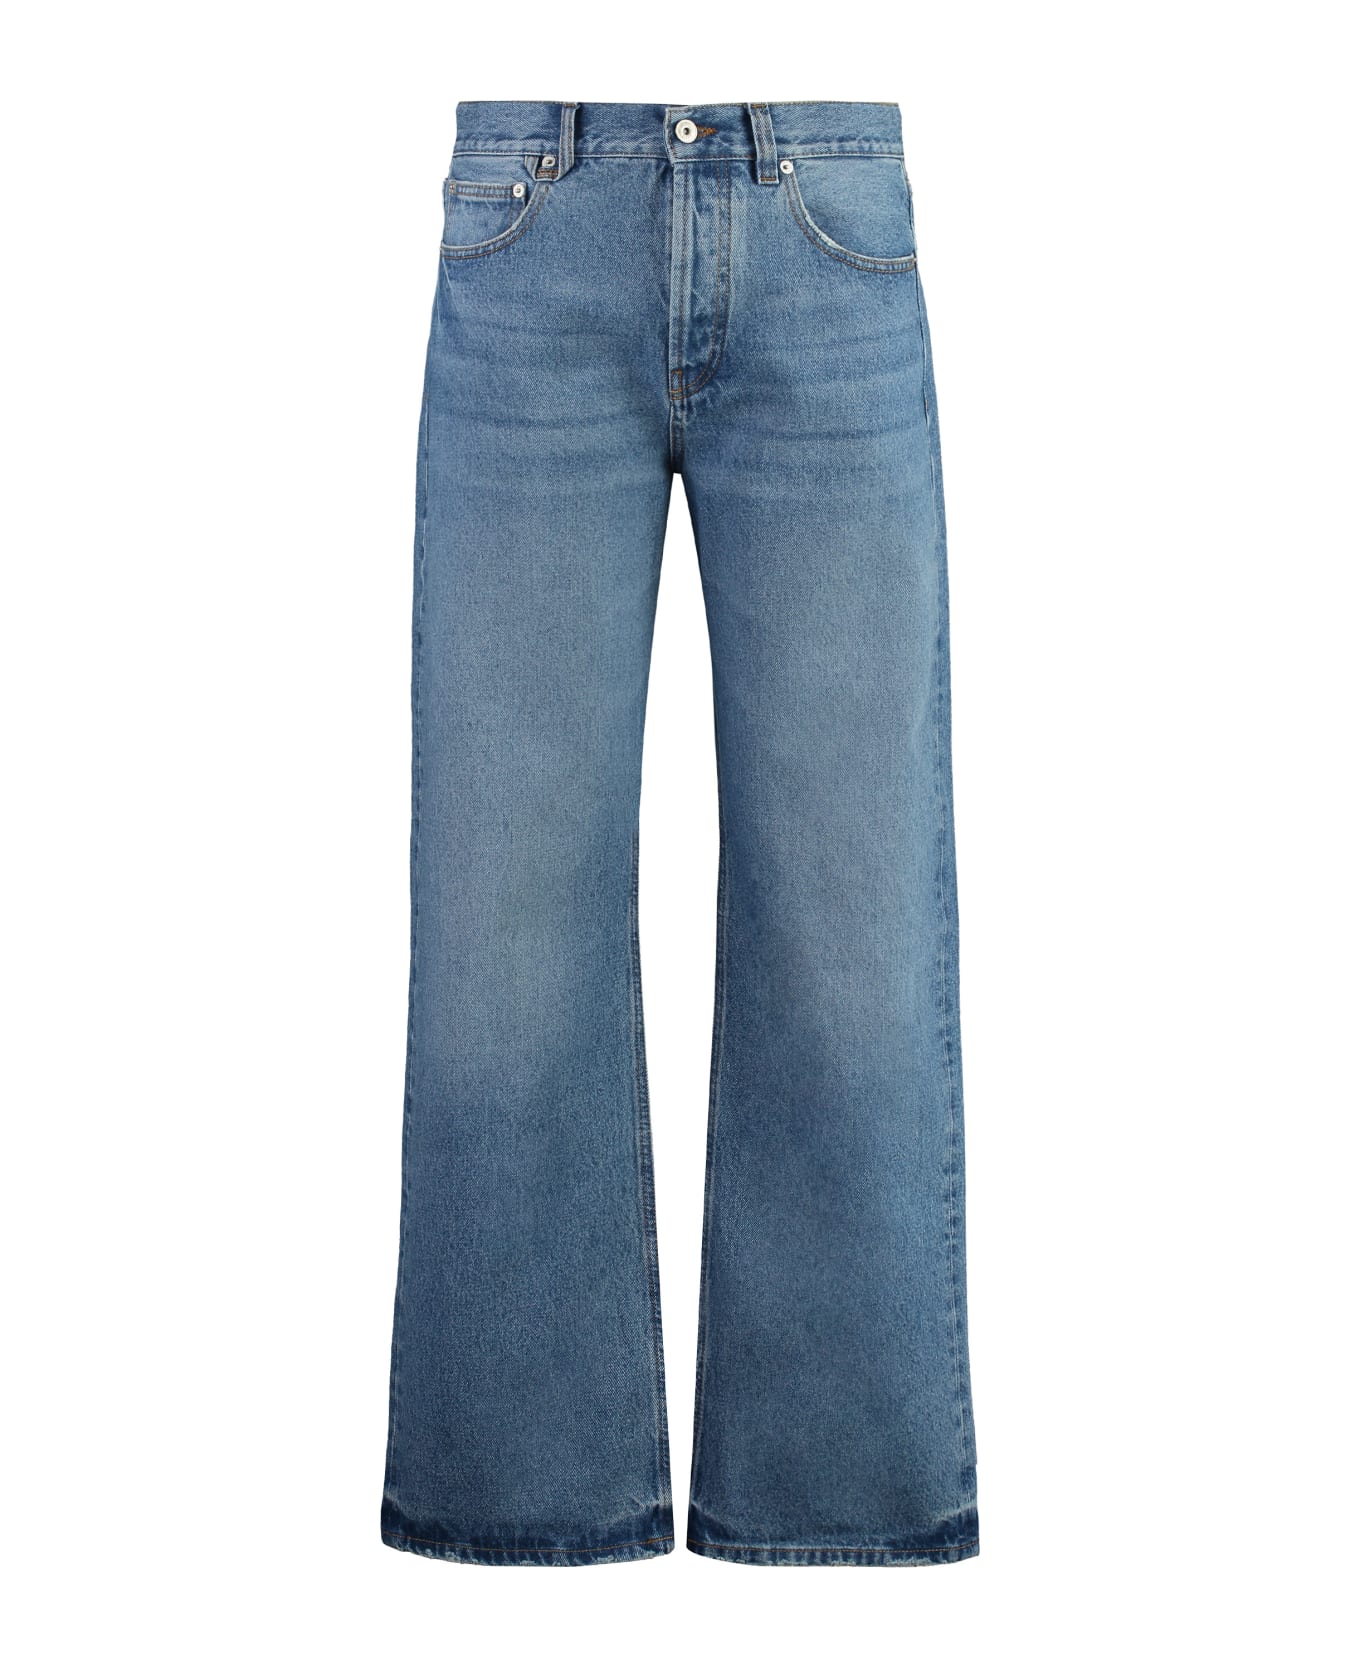 Jacquemus Nîmes 5-pocket Straight-leg Jeans - 33C BLUE/TABAC デニム